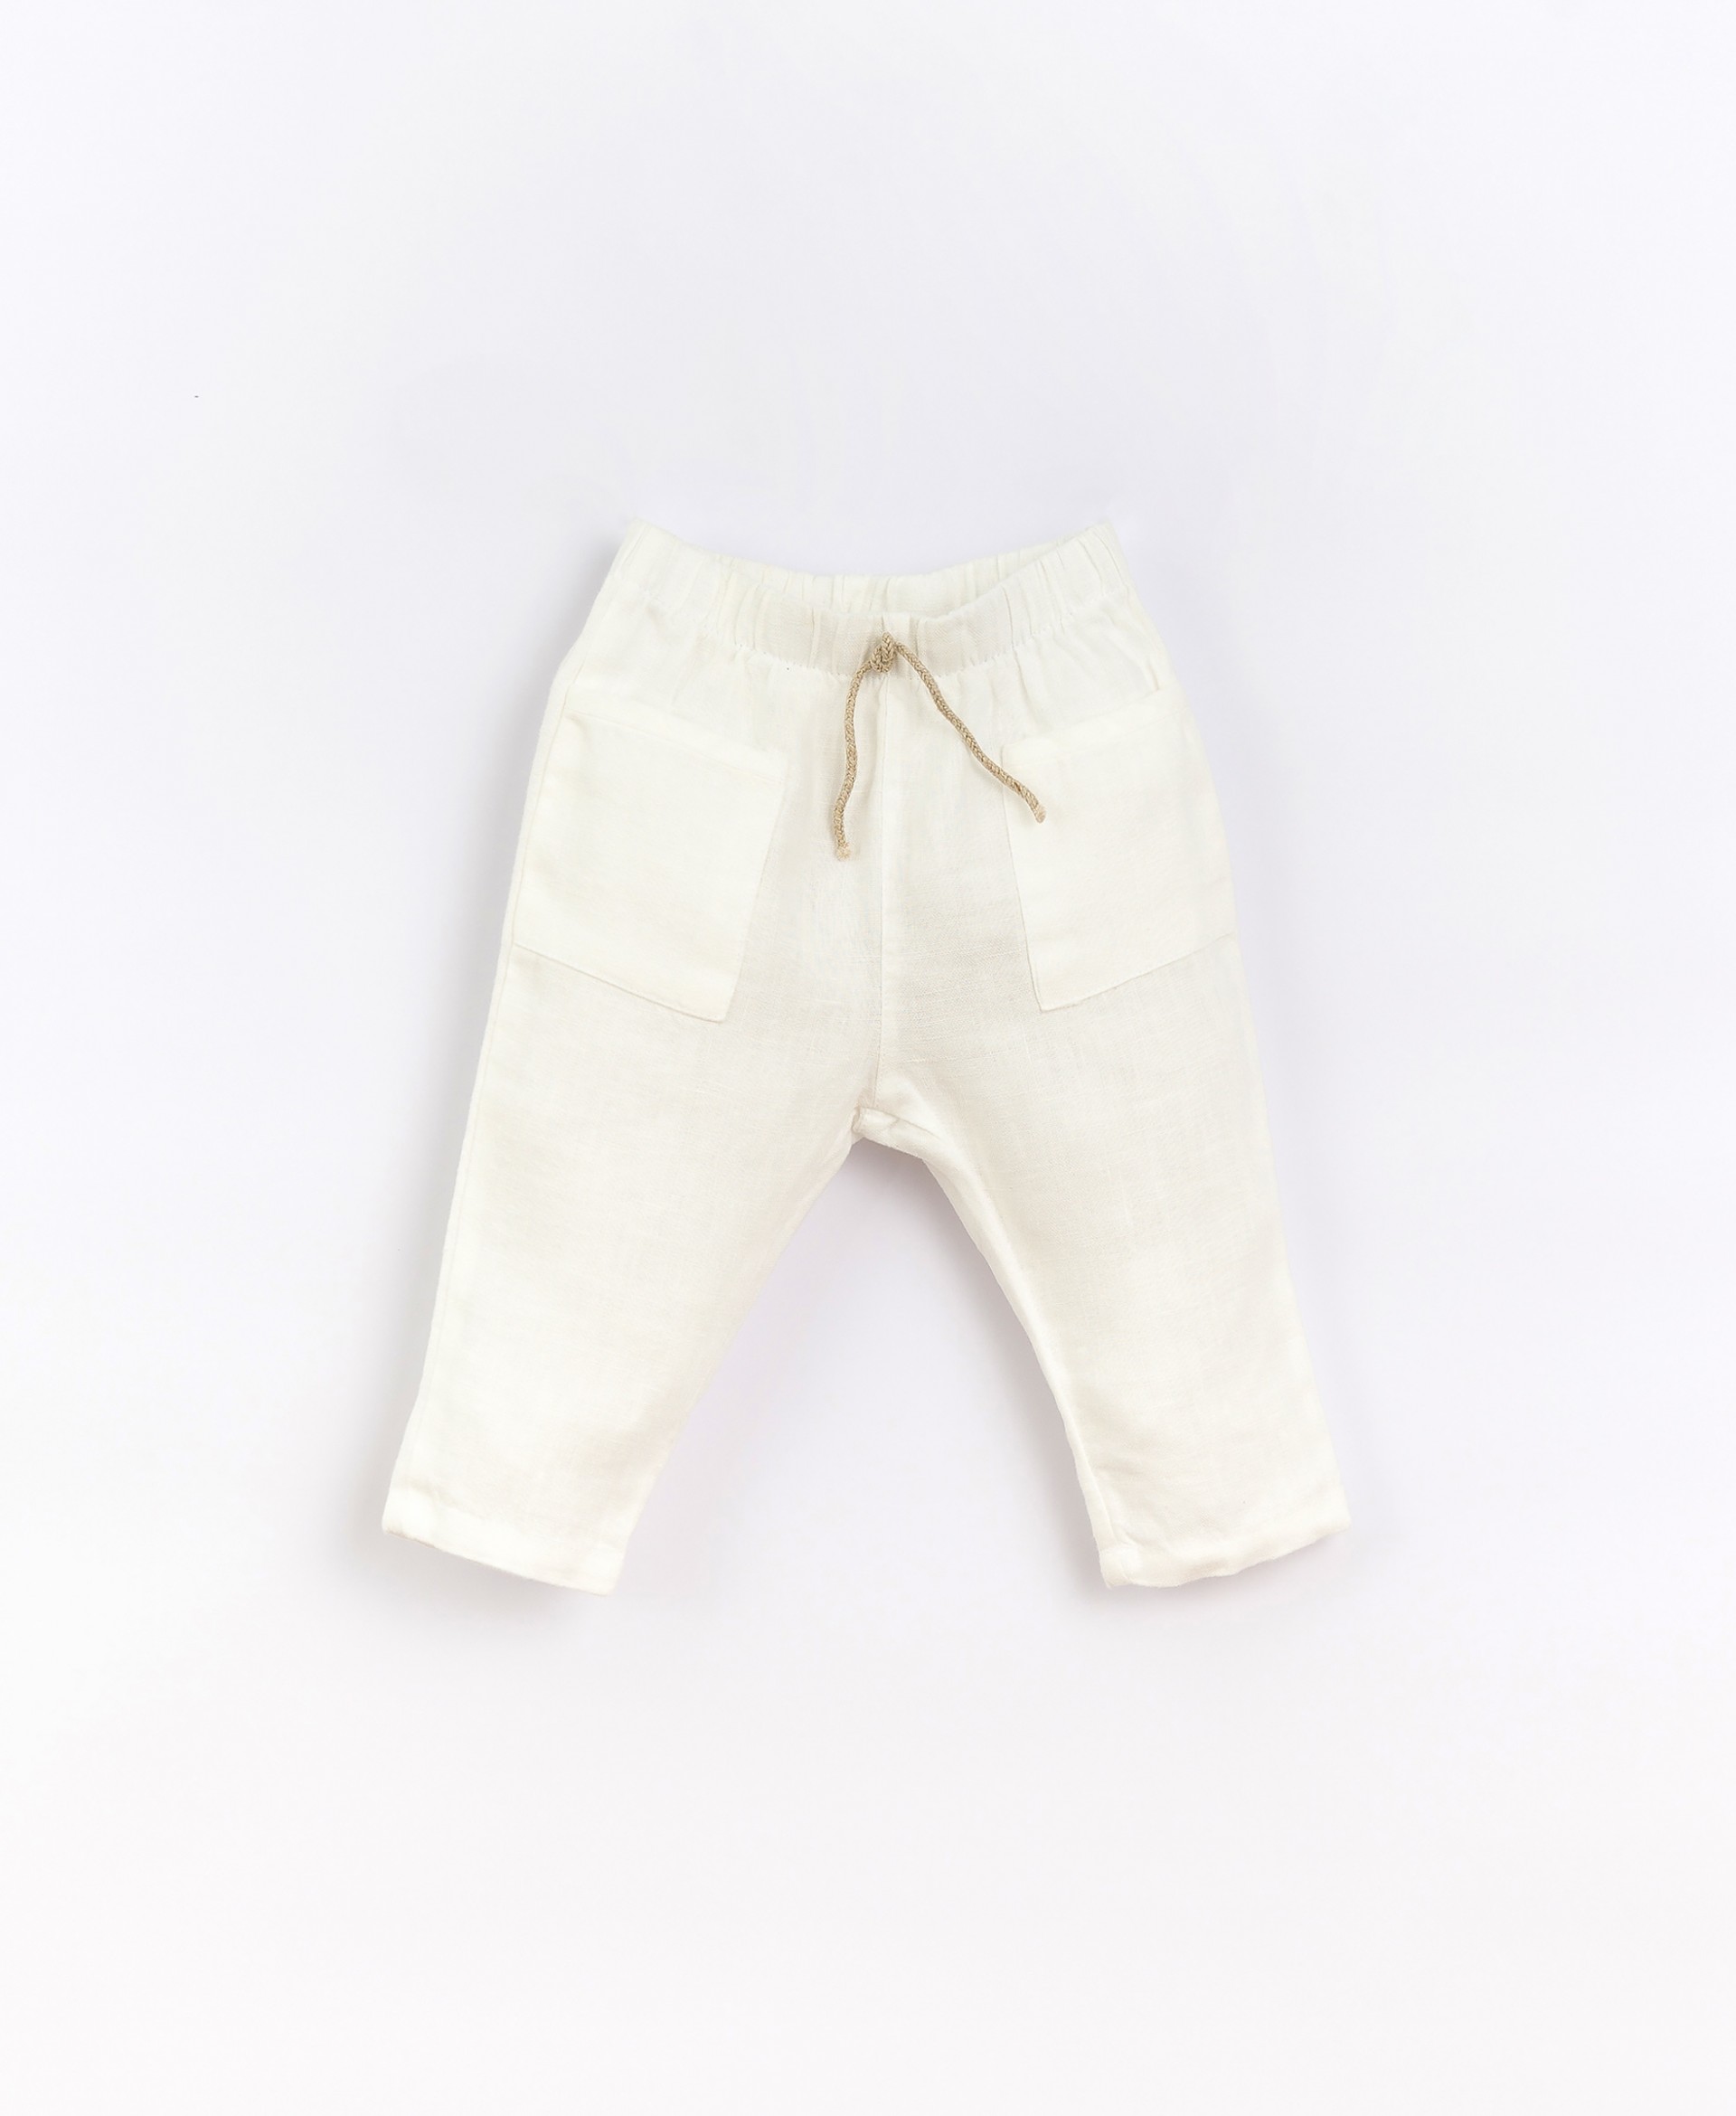 Pantaloni di lino con cordino elastico| Basketry